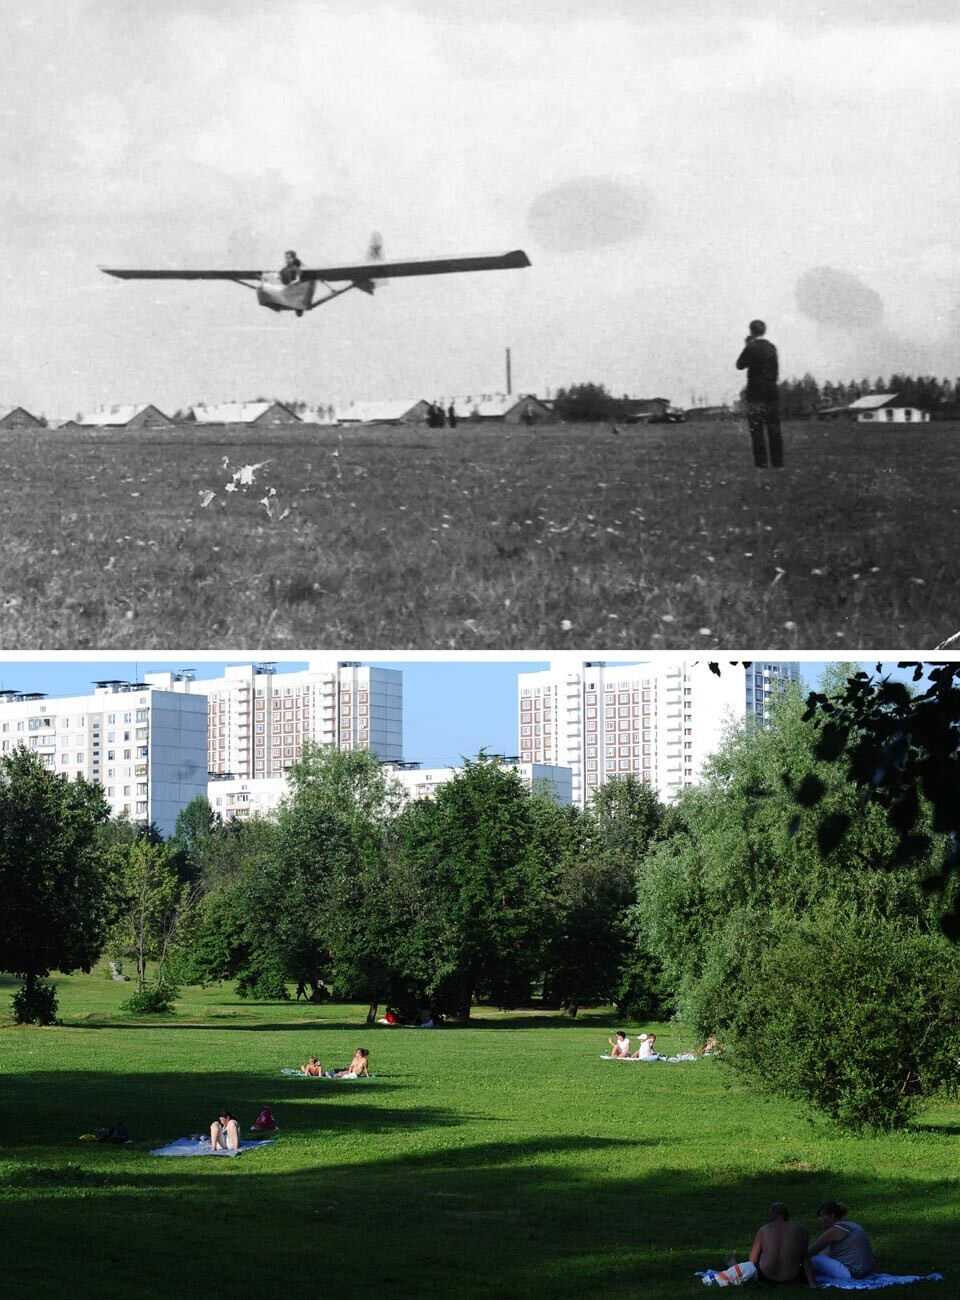 Аеродромот Чертаново, 1964 година и паркот во Чертаново денес

